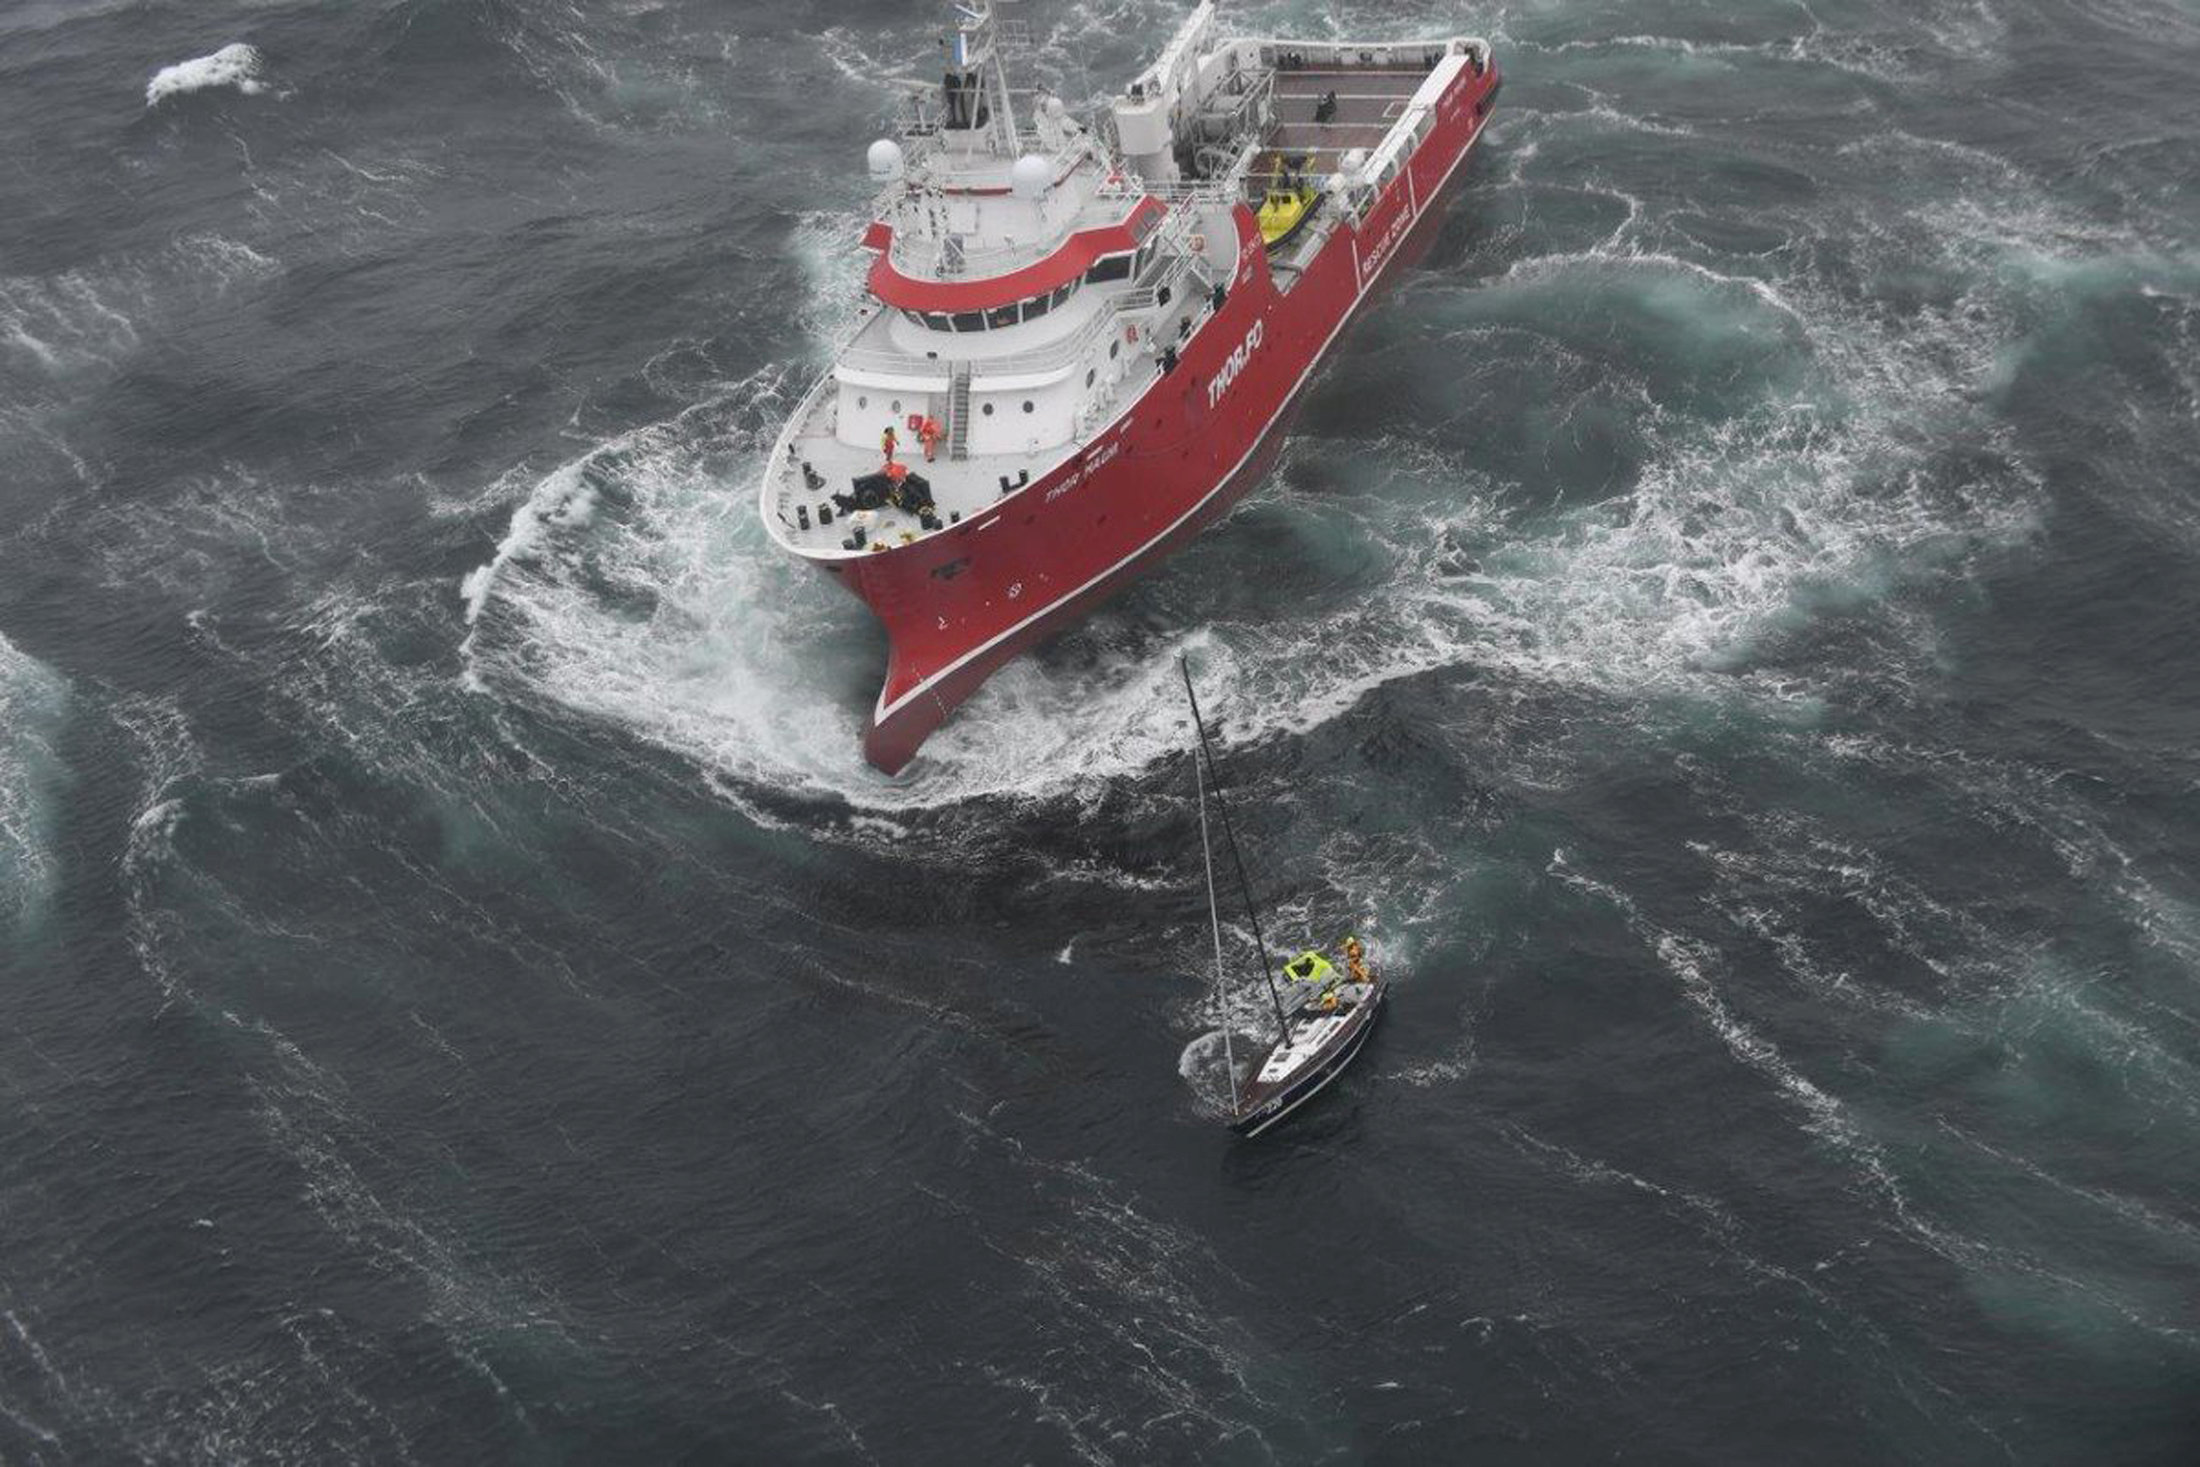 خفر سواحل كندا تحاول إنقاذ سفينه شراعية تقطعت بها السبل فى المحيط الأطلسى